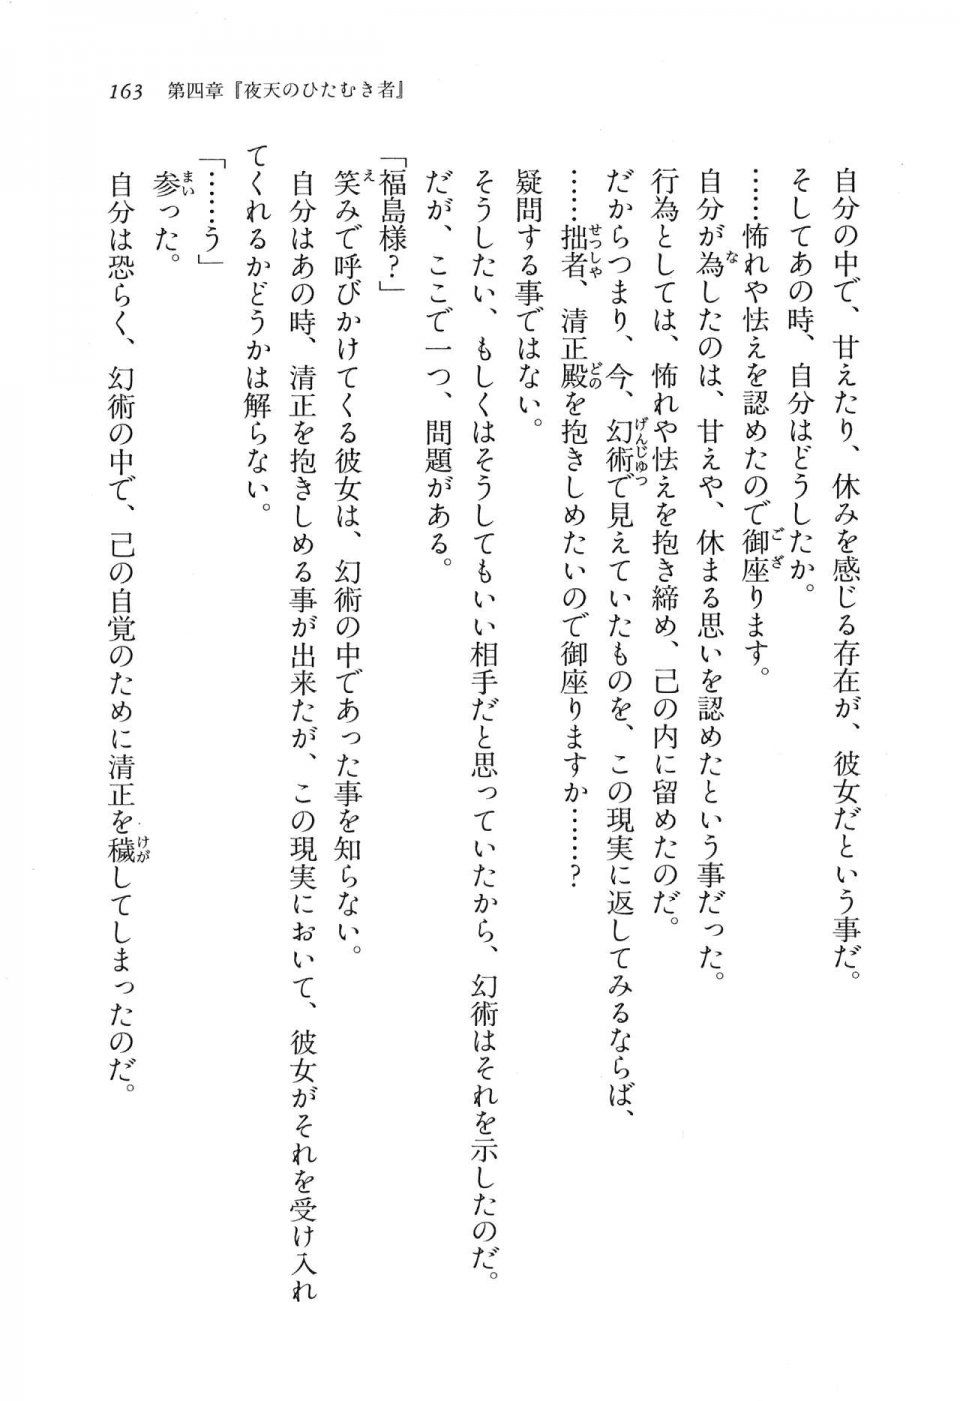 Kyoukai Senjou no Horizon LN Vol 16(7A) - Photo #163